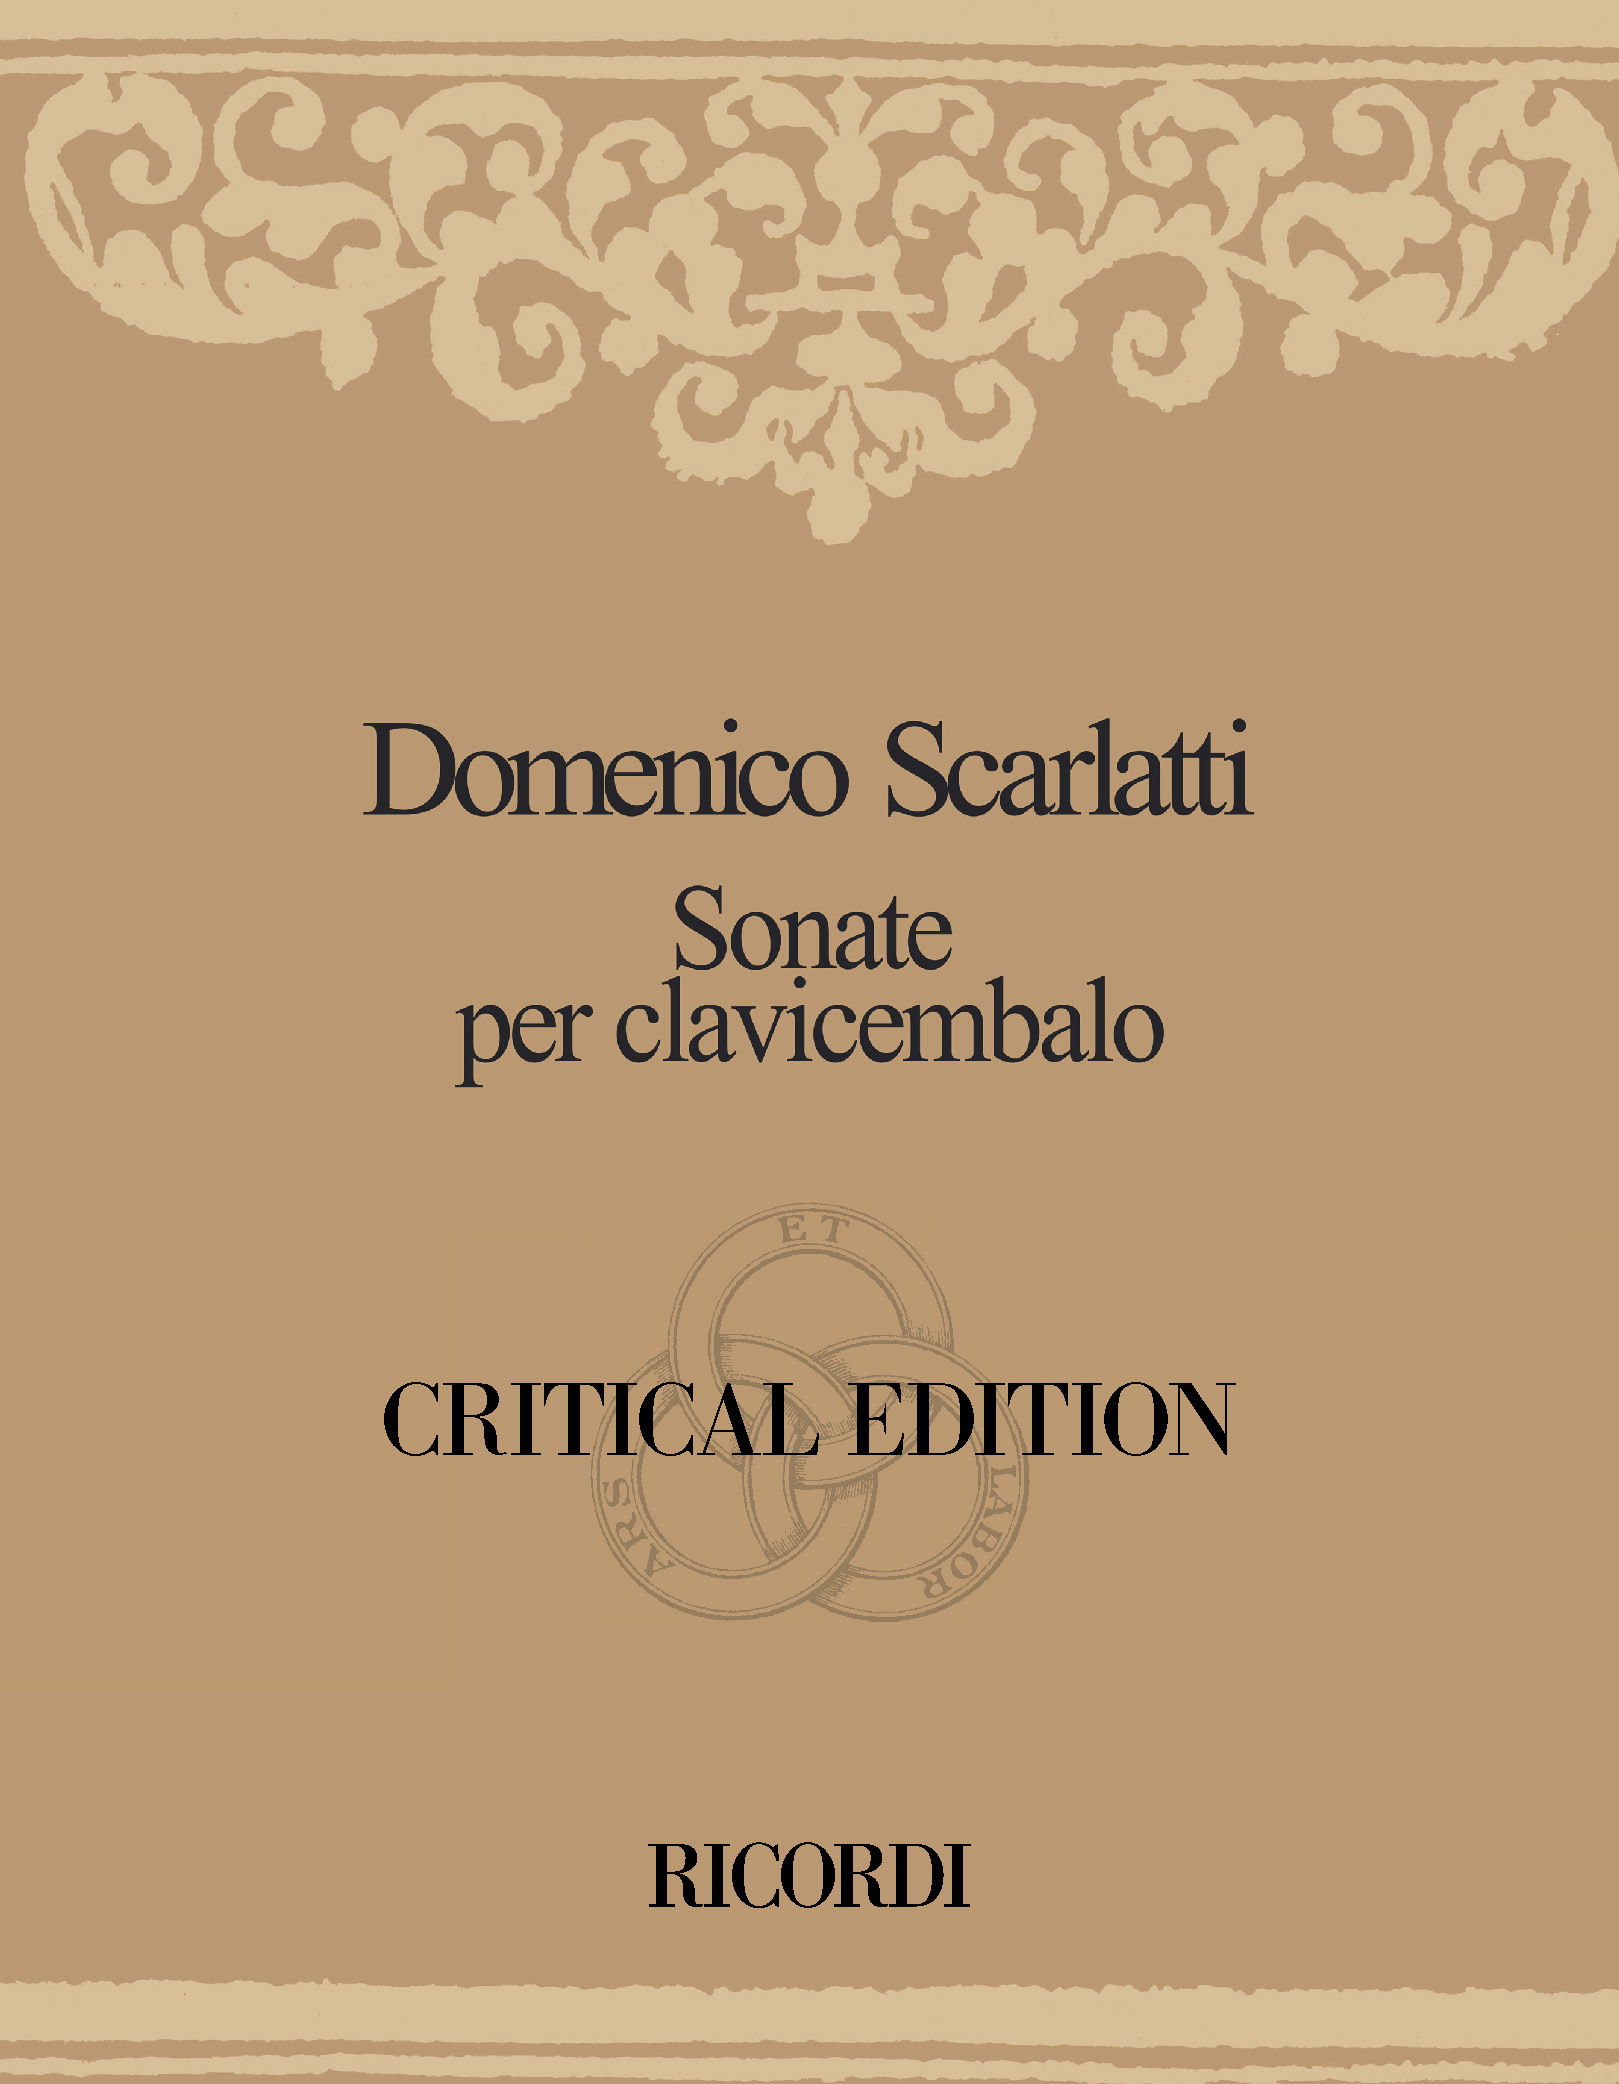 Domenico Scarlatti: Critical Edition of the Harpsichord Sonatas